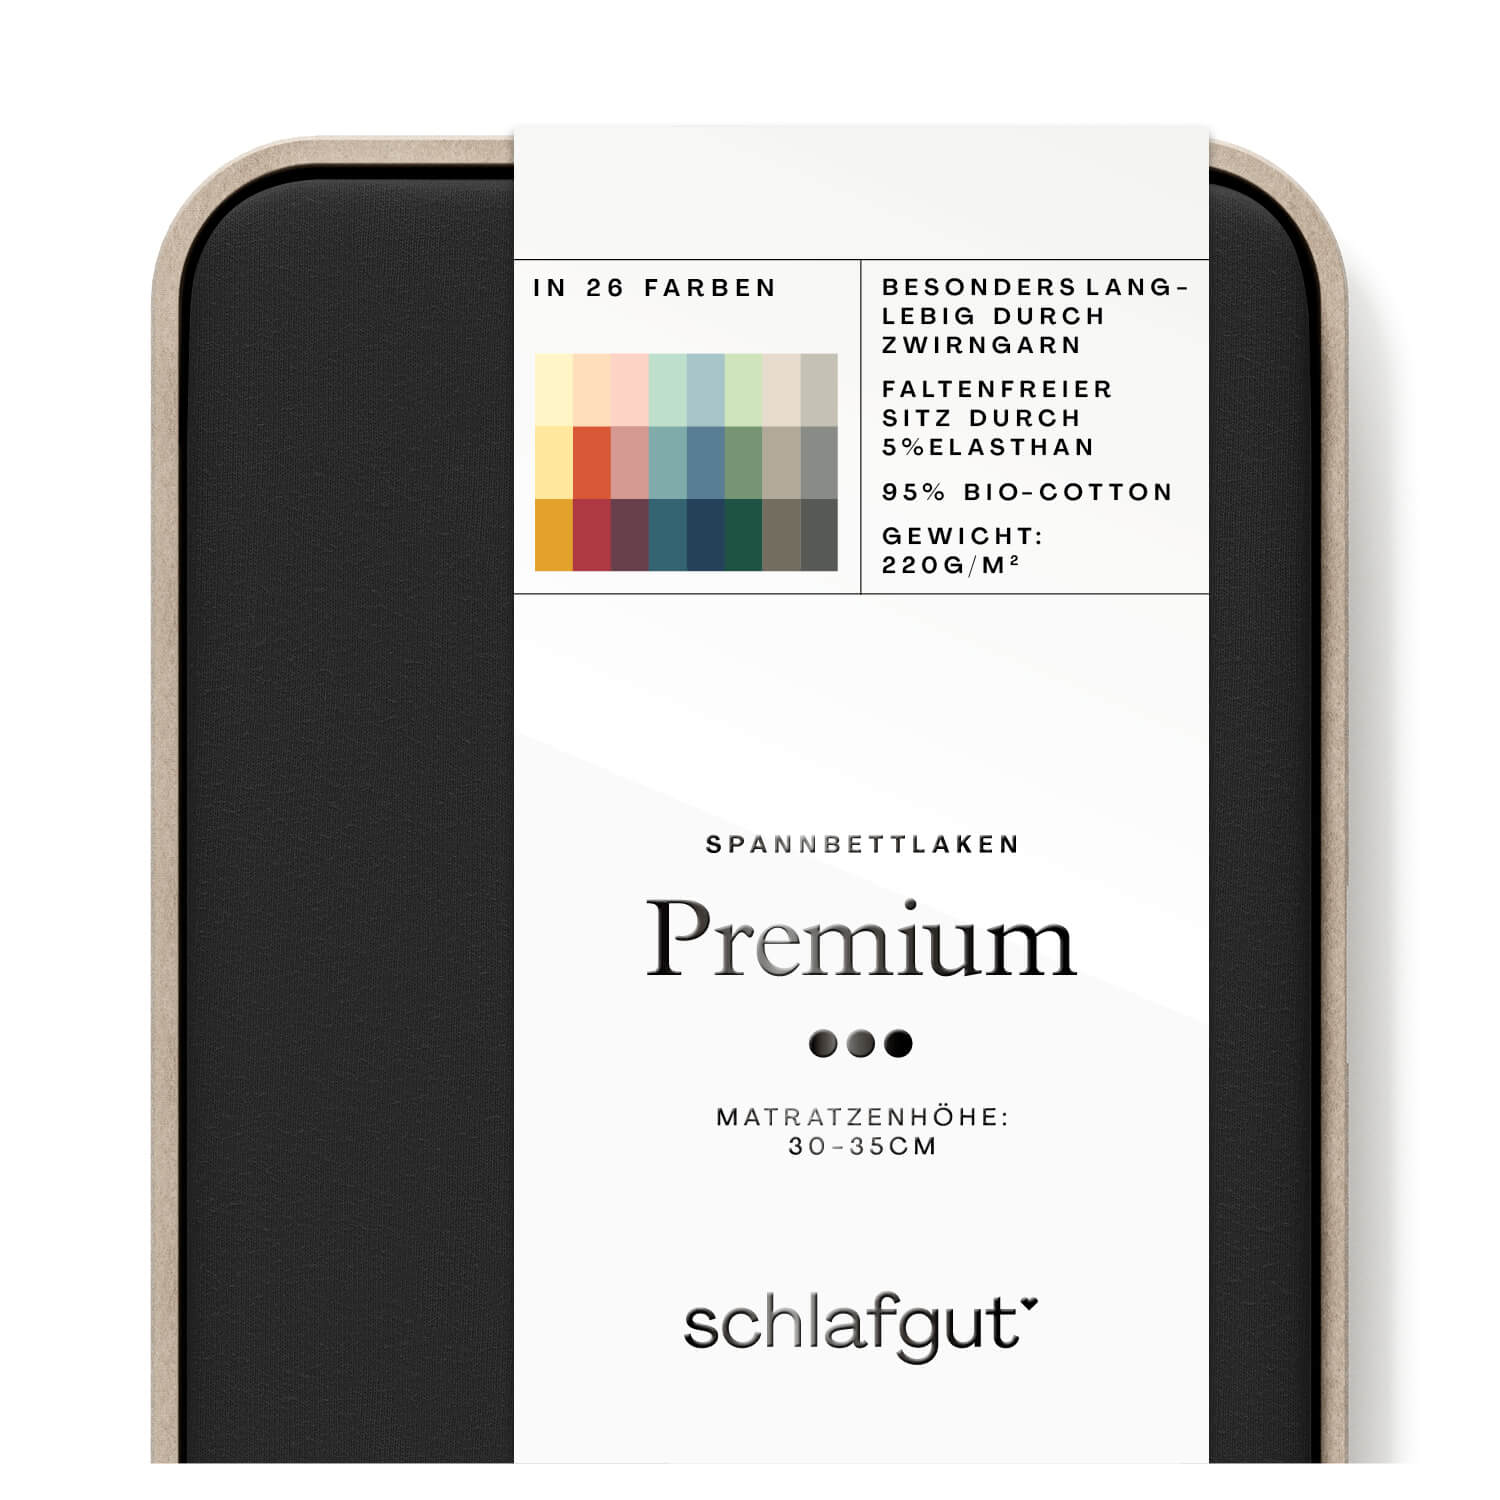 Das Produktbild vom Spannbettlaken der Reihe Premium in Farbe off-black von Schlafgut